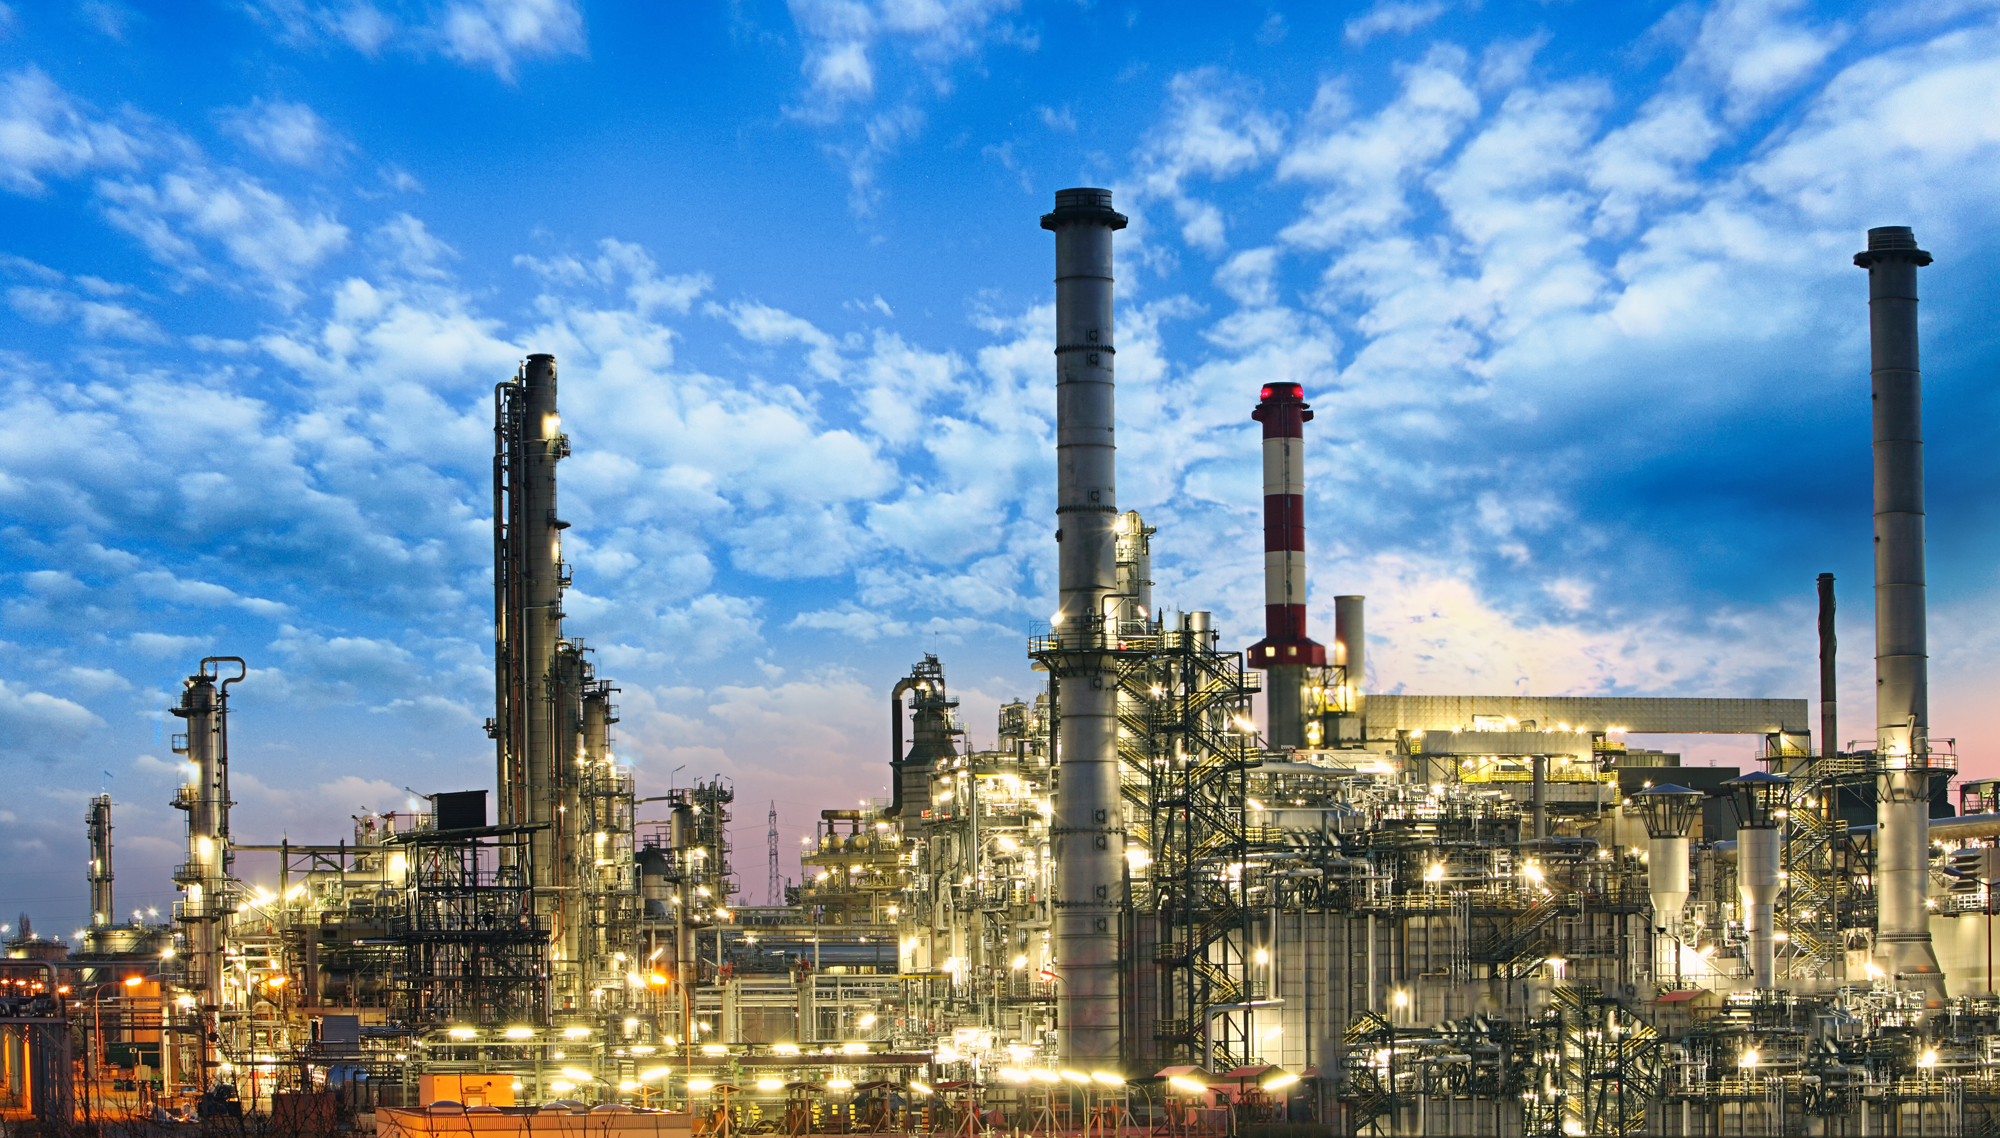 Öl- und Gasindustrie - Raffinerie, Fabrik, petrochemische Anlage